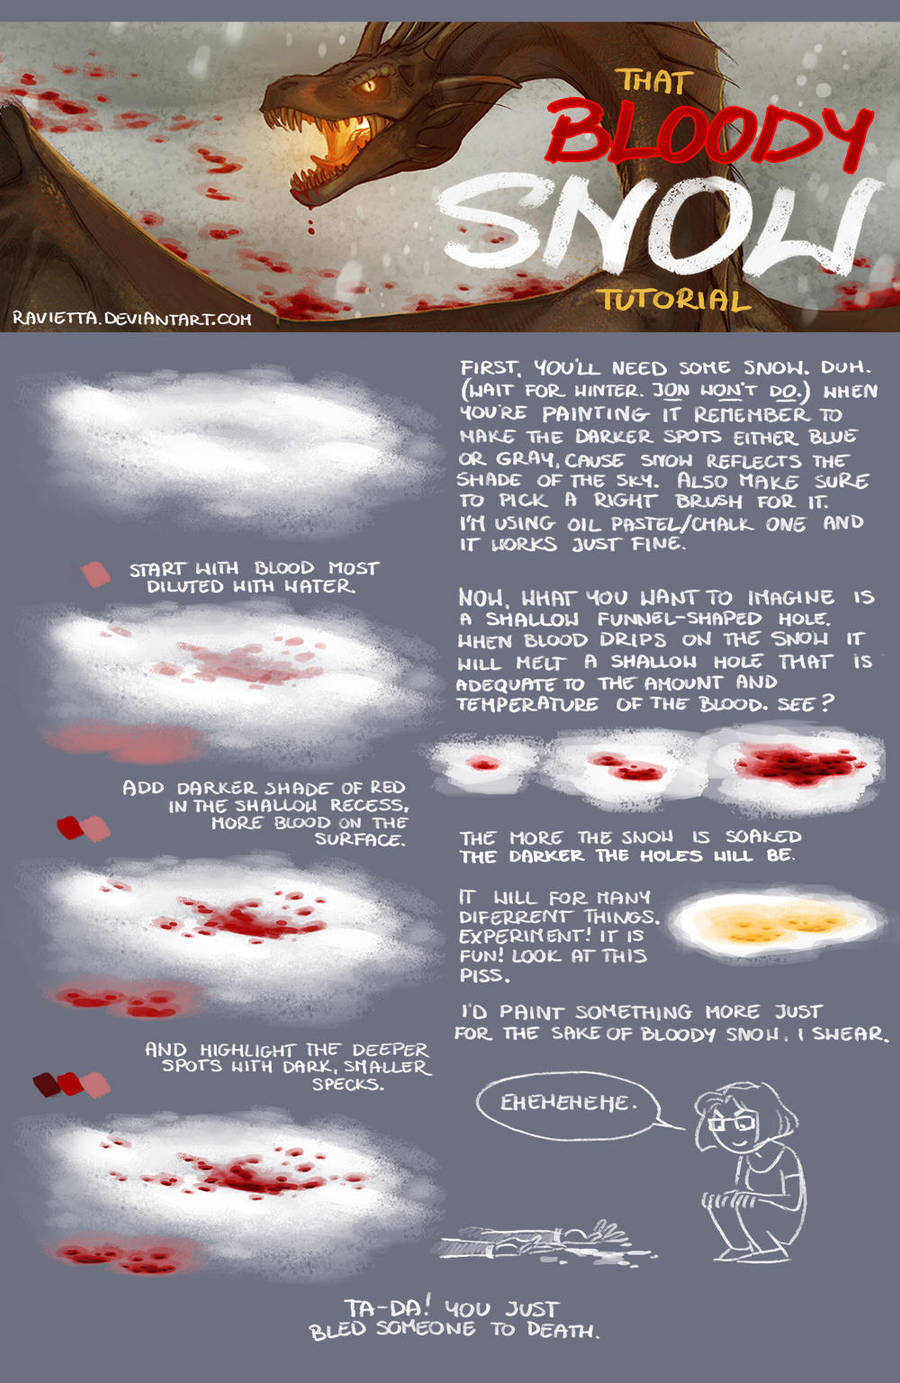 Bloody Snow tutorial by Ravietta on DeviantArt